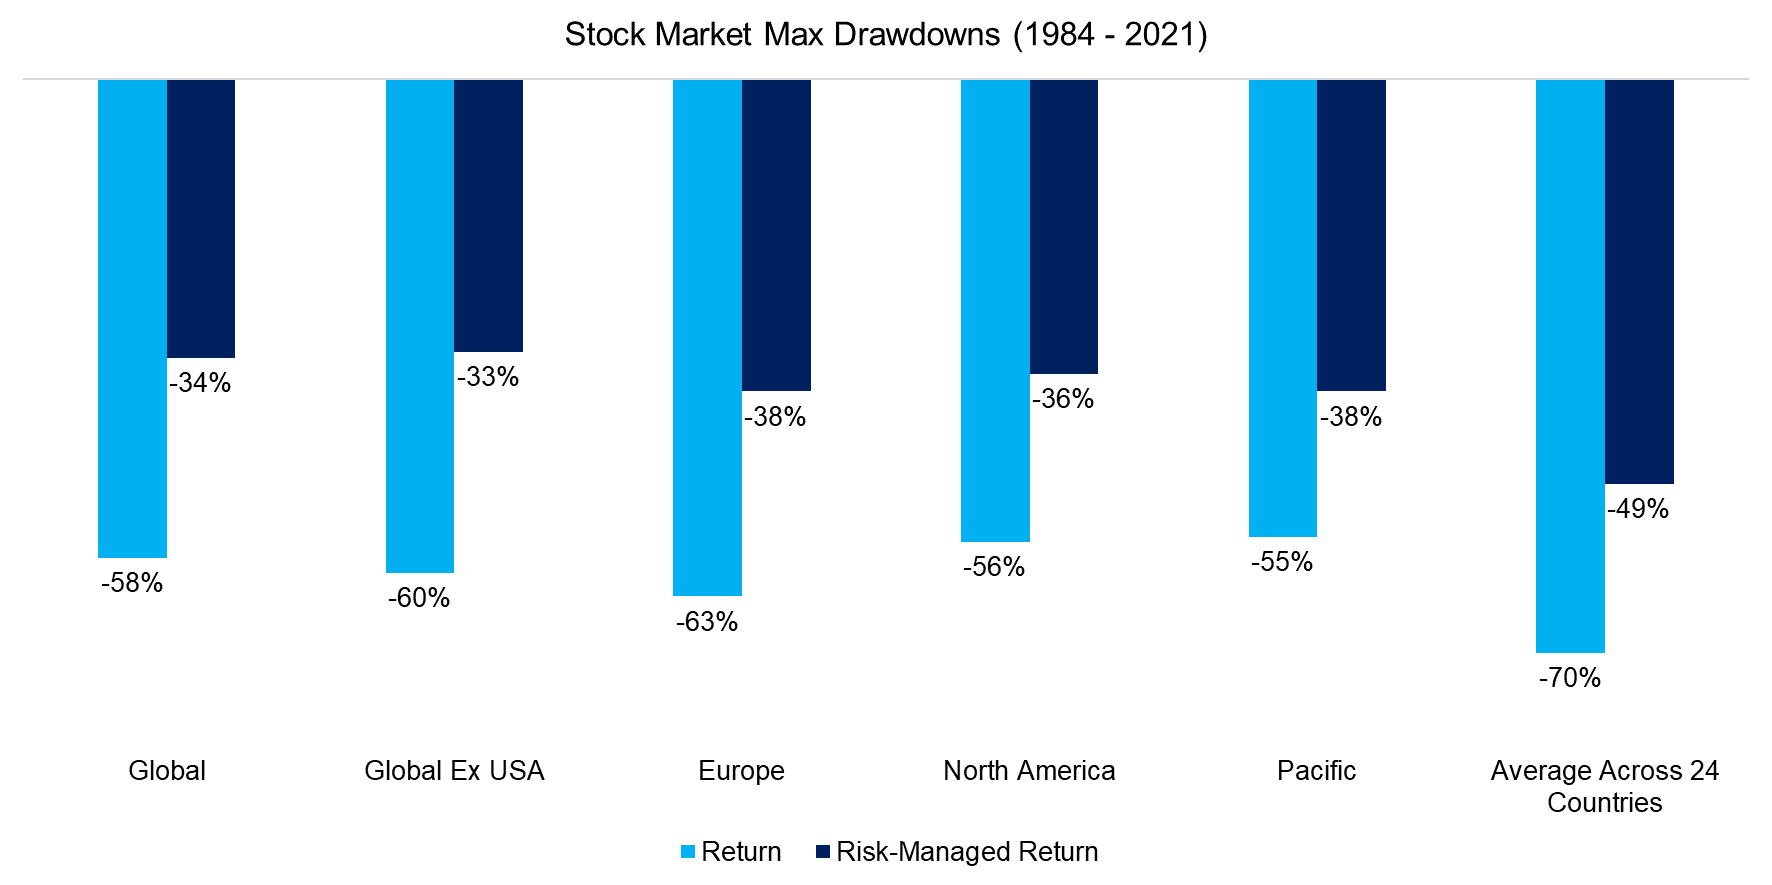 Stock Market Max Drawdowns (1984 - 2021)